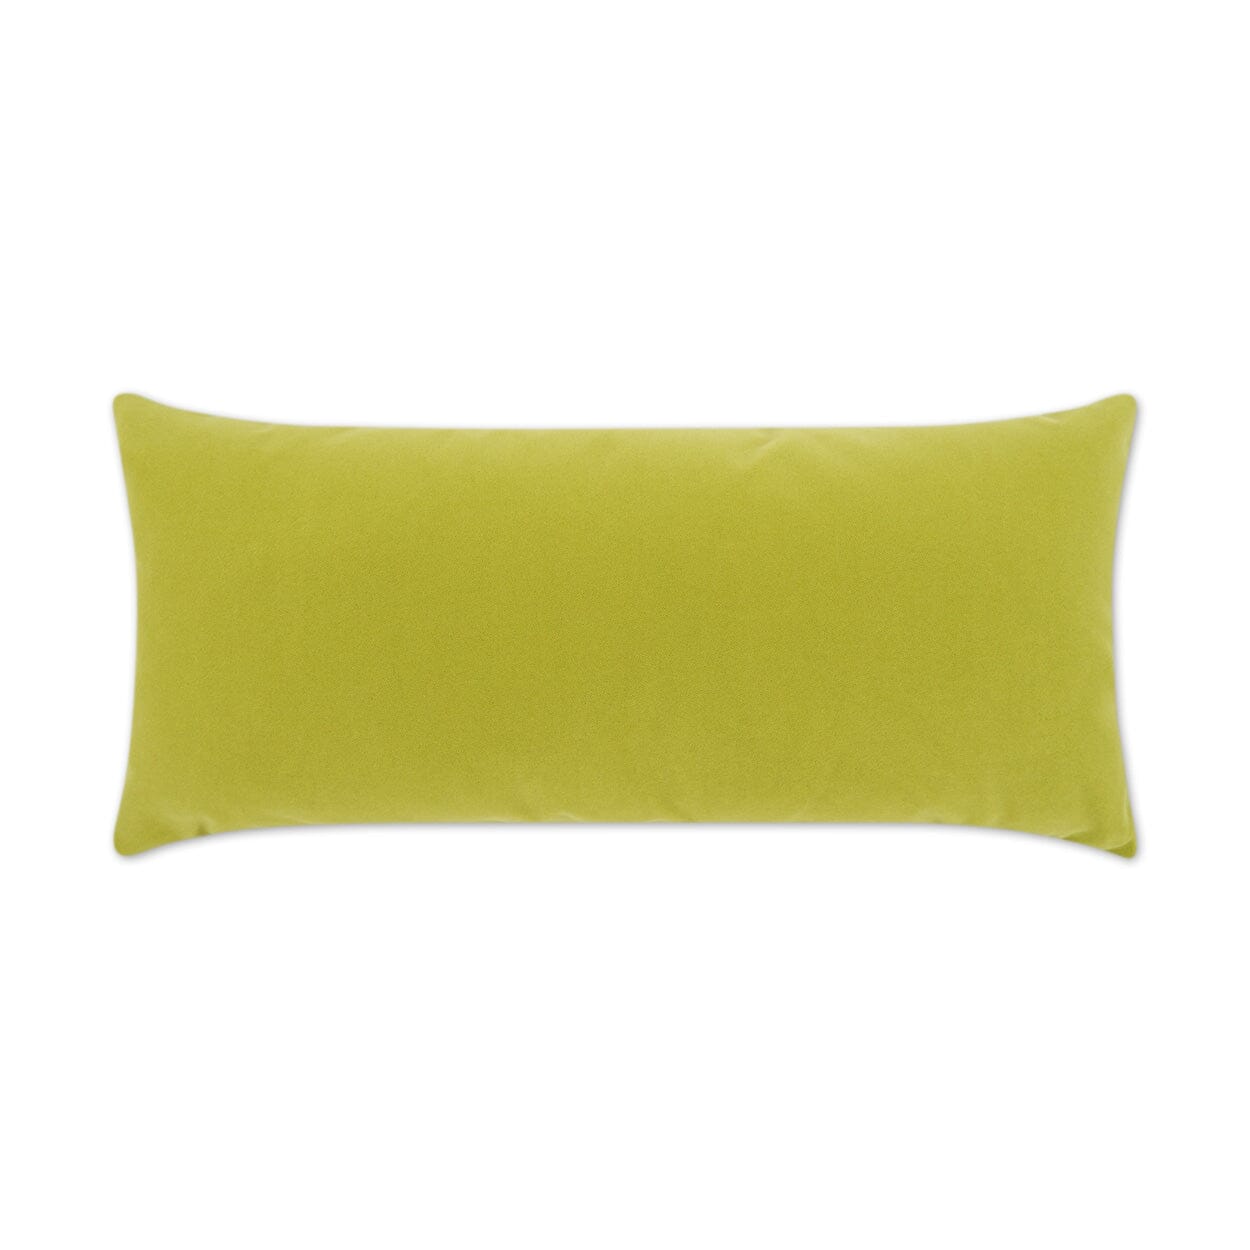 D.V. Kap 12" x 24" Outdoor Lumbar Pillow | Sundance Duo Leaf Lumbar Pillows D.V Kap Outdoor